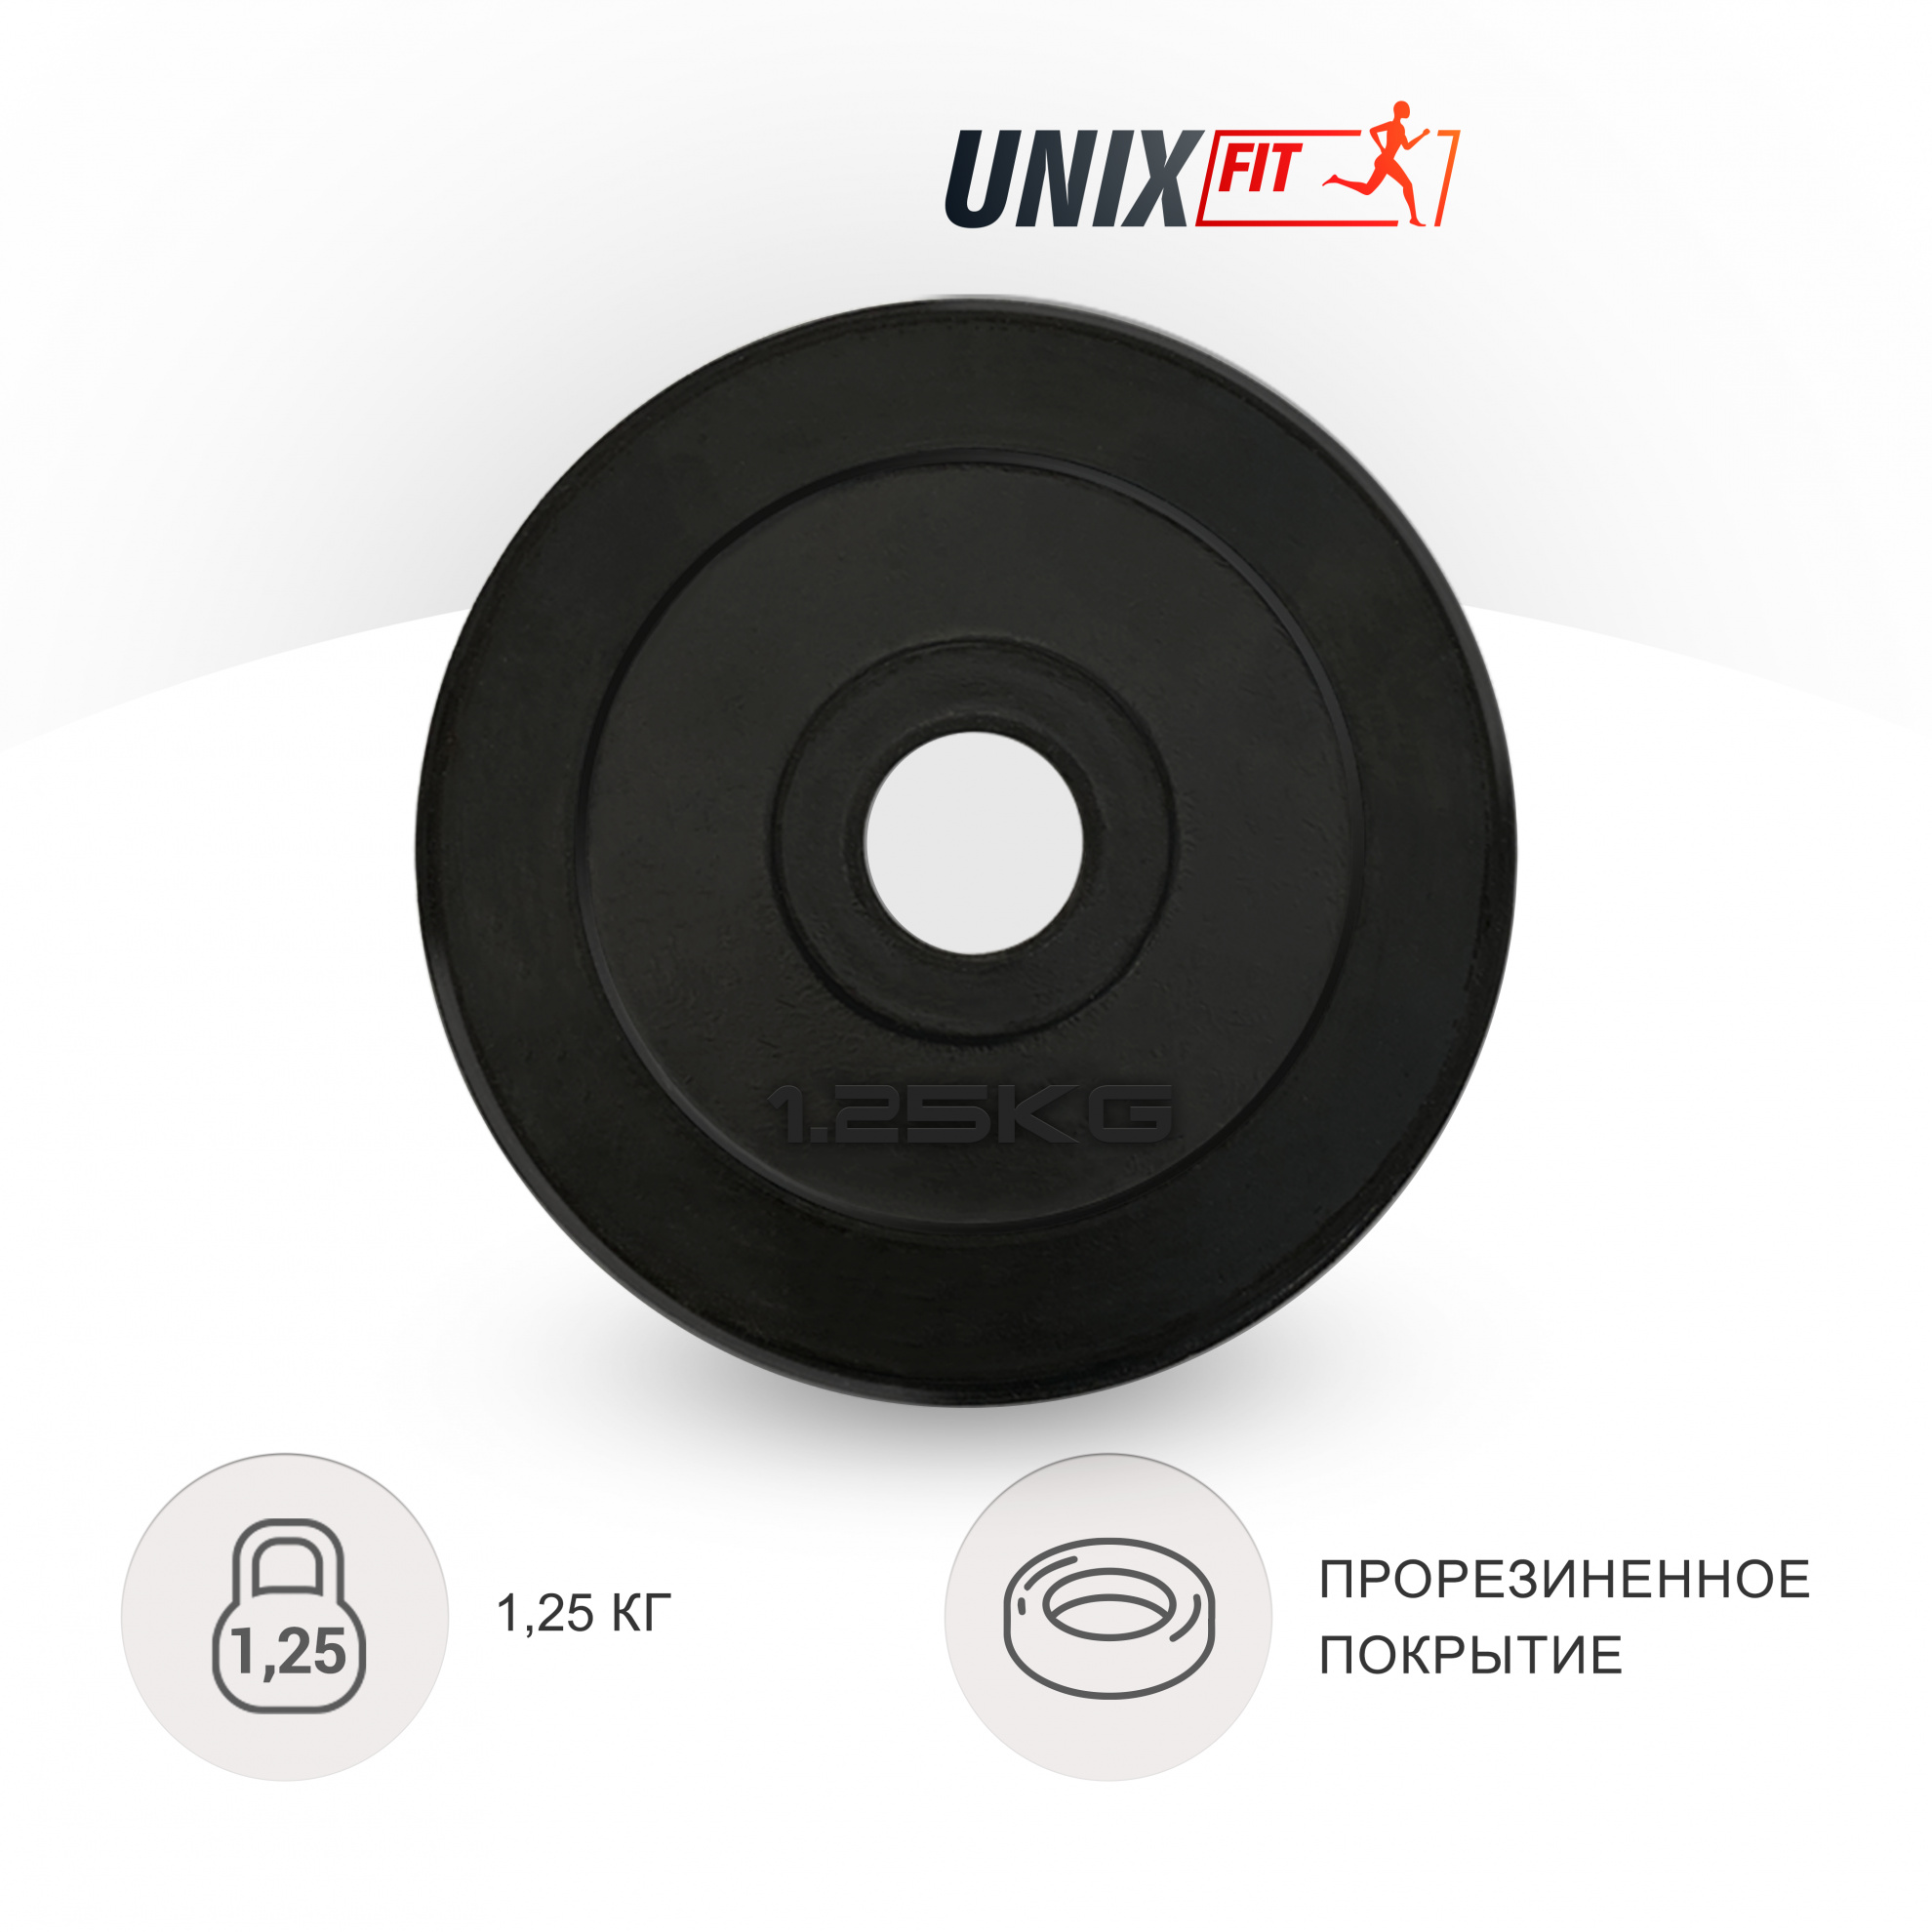 1.25 кг обрезиненный черный в СПб по цене 690 ₽ в категории диски (блины) для штанг и гантелей UnixFit